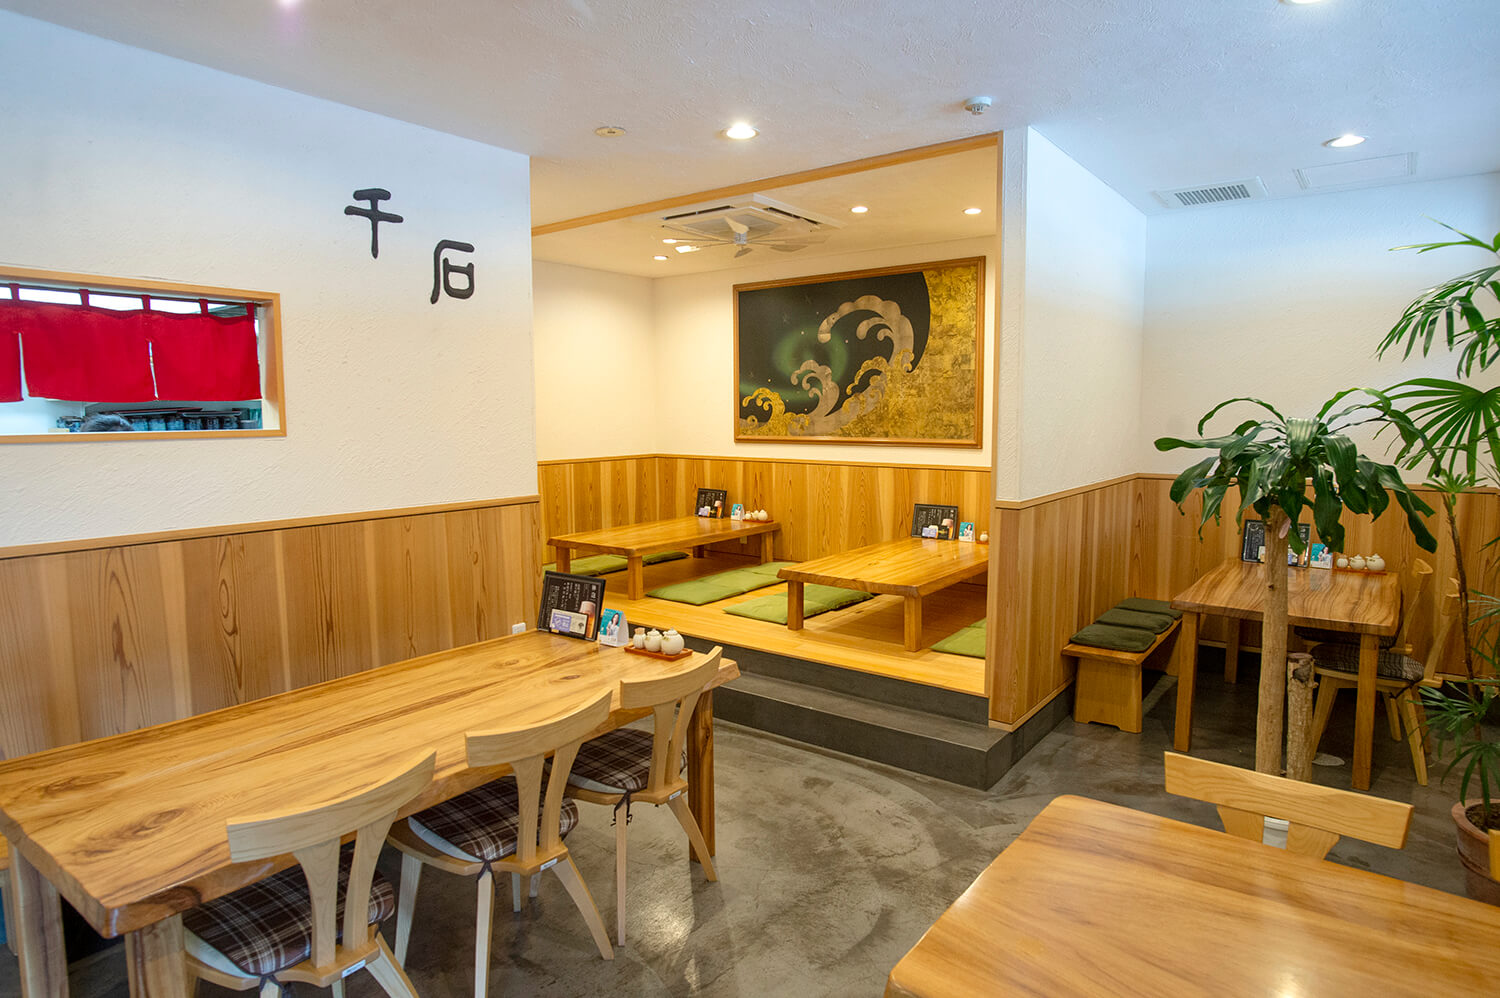 センザキッチンのオープン以前より同地で営業を続けている。青海島観光で定番のグルメスポット